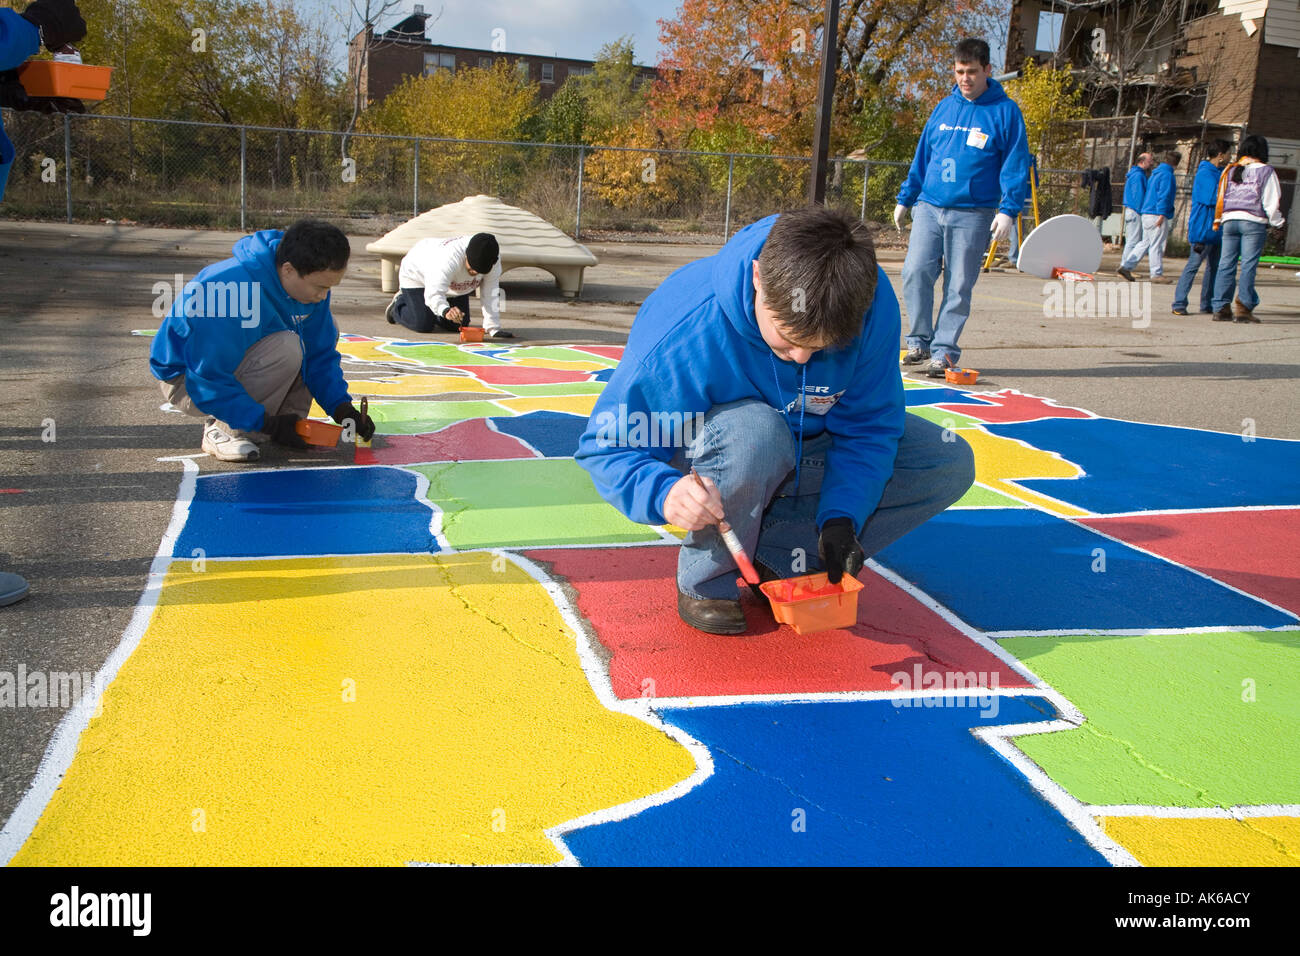 Les bénévoles construire une aire de jeux pour enfants dans une communauté à faible revenu. Banque D'Images